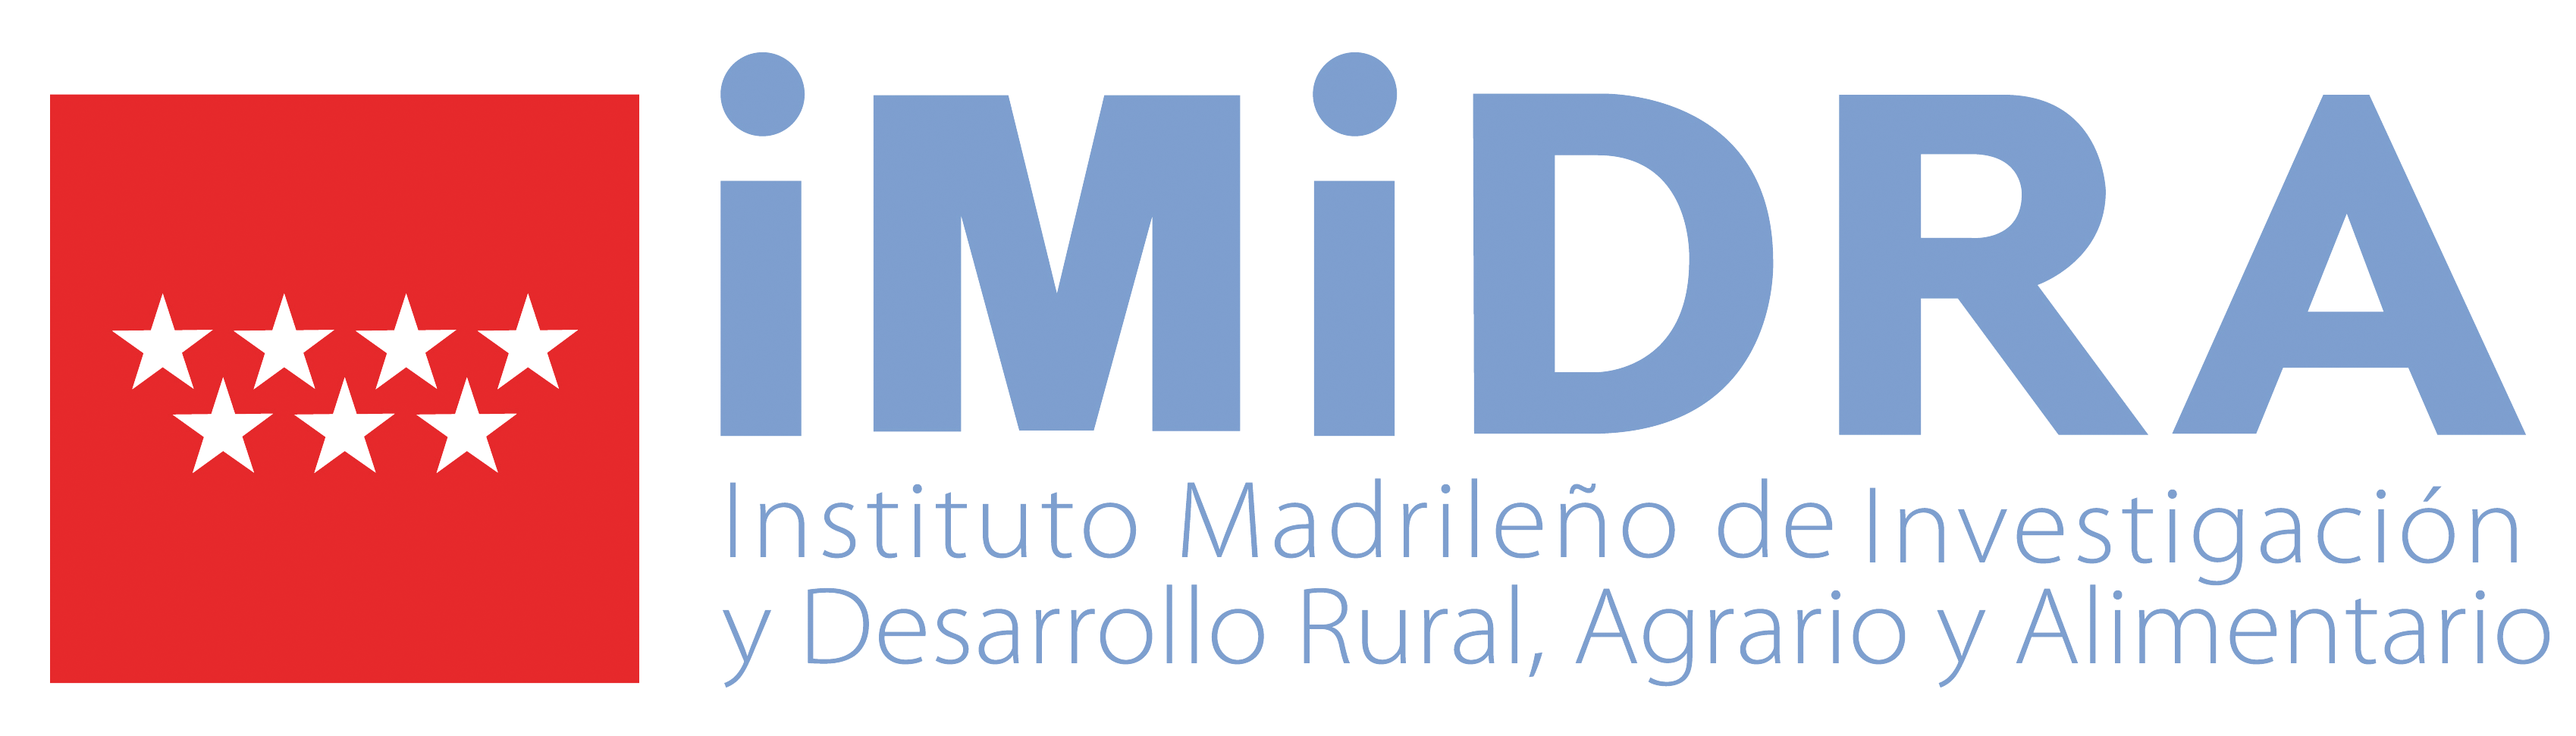 Logotipo del IMIDRA  con el símbolo de la CM y en color azul